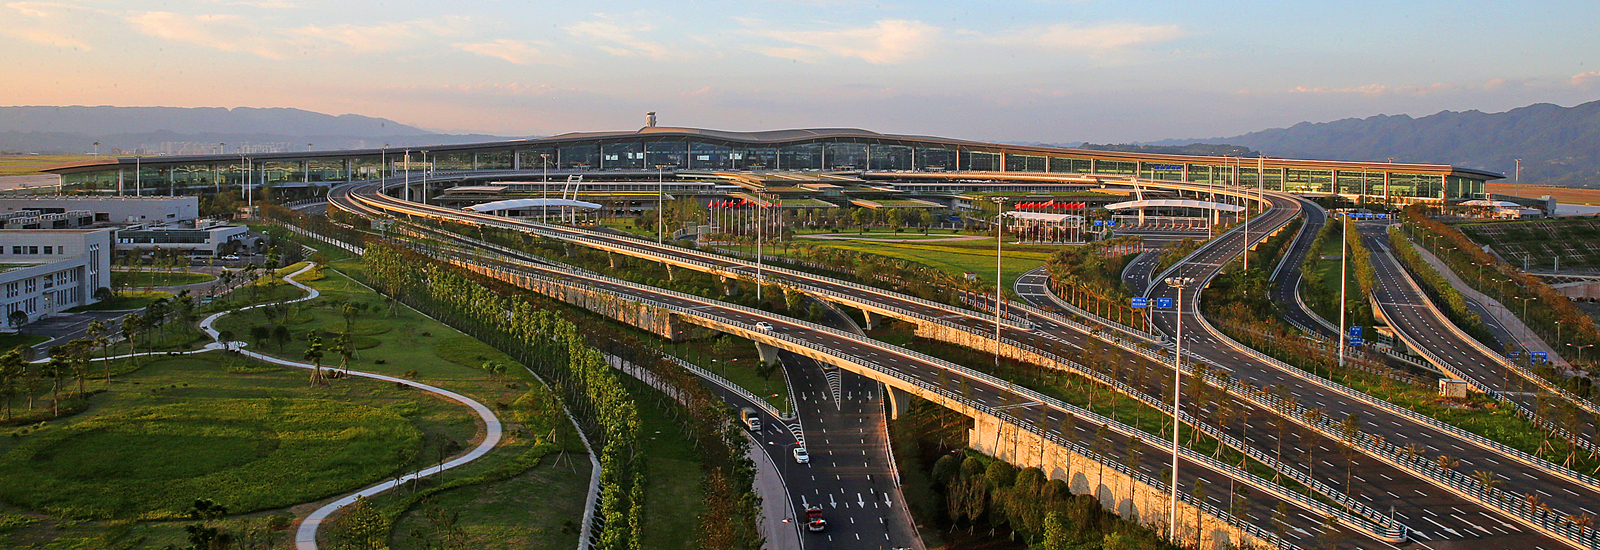 重庆江北机场 全景图片